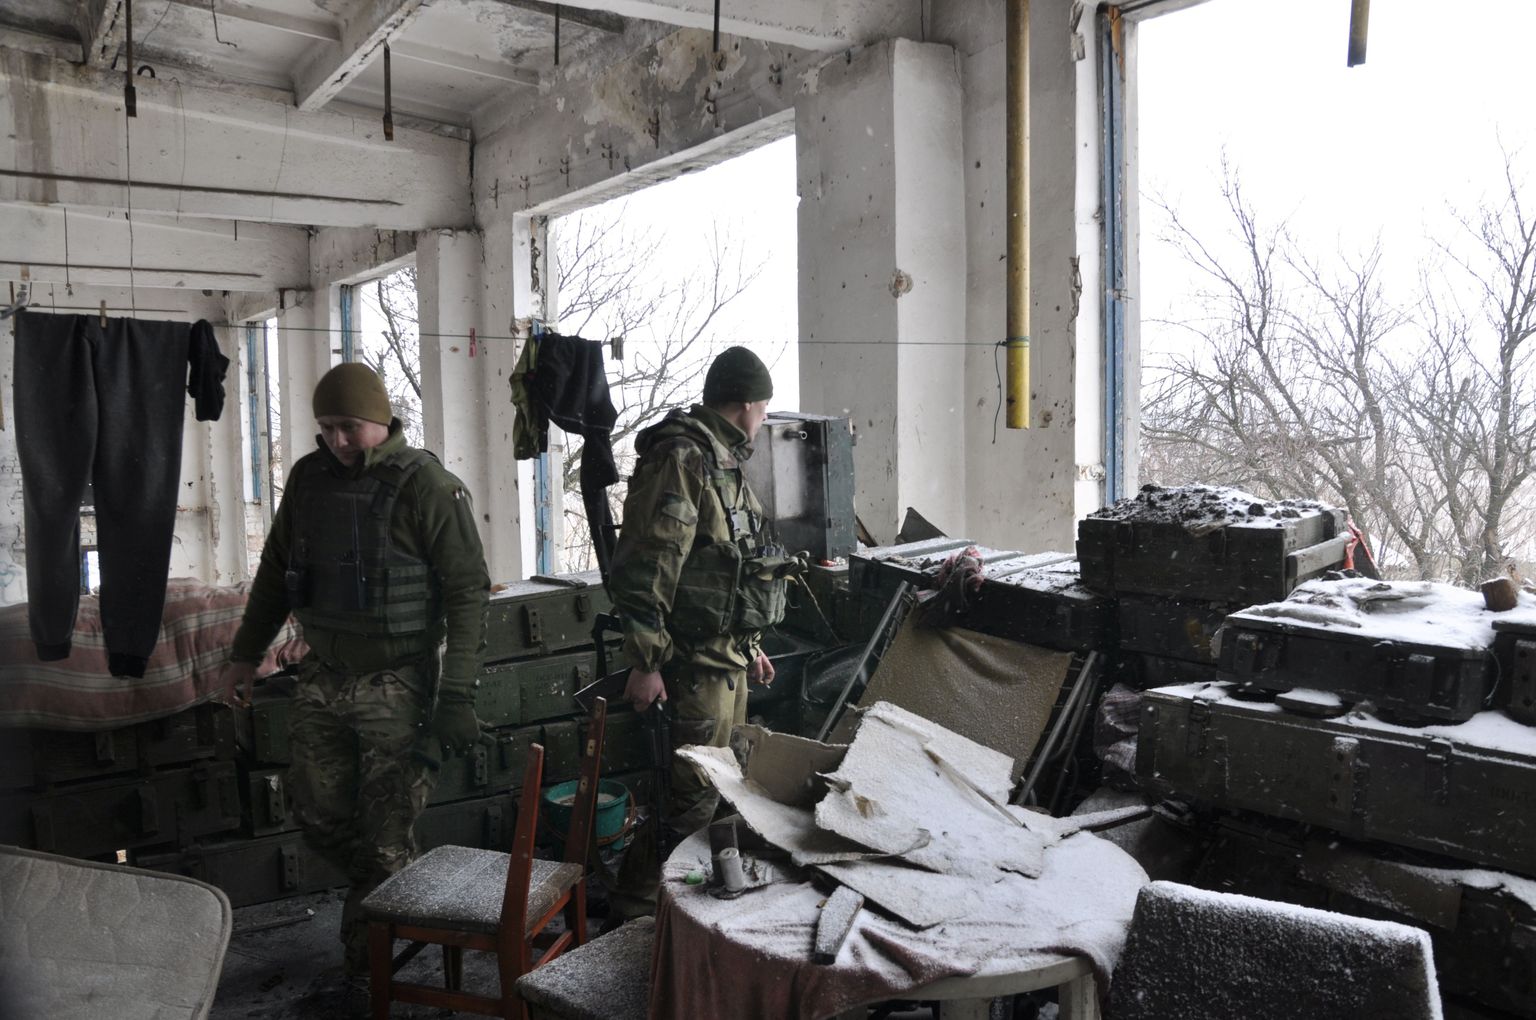 Ukraina dessantväelased jaanuari lõpus positsioonidel Piski külas Donetski külje all, 500 meetrit kurikuulsast lennujaamast, mis sai 2014 aastal kuulsaks kui üks kuulsamaid vastasseisu kohti Donbassi sõjas. Avdijevka all alanud lahingutes ründasid separatistid ka neid, muuhulgas tulistati tankidest, kuid õnneks keegi surma ei saanud.